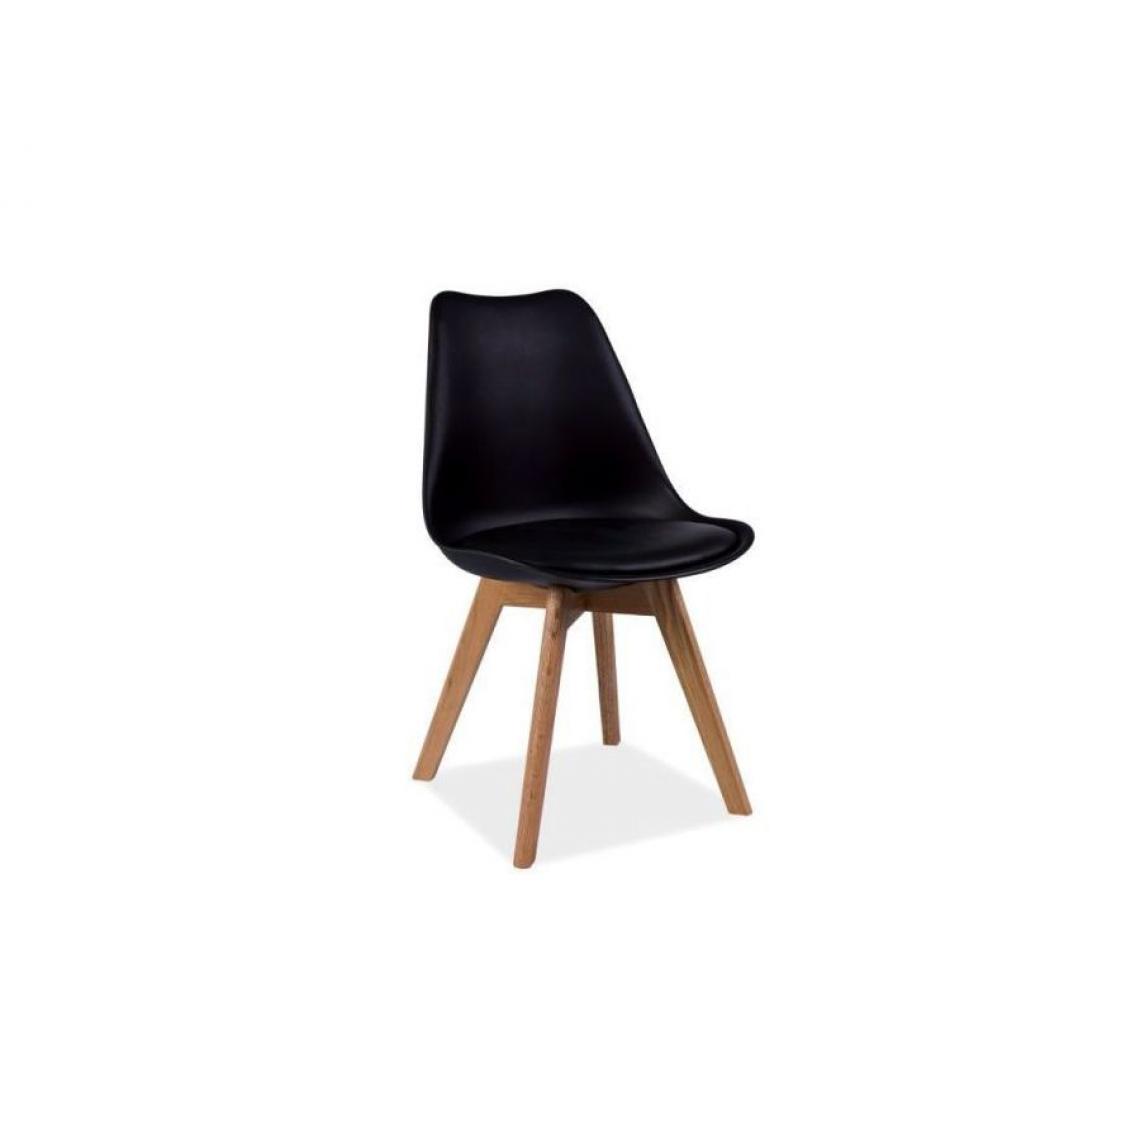 Hucoco - KRIZ | Chaise style scandinave salle à manger/salon/bureau | Dimensions : 83x49x43cm | Assise en cuir écologique | Base en bois - Noir - Chaises